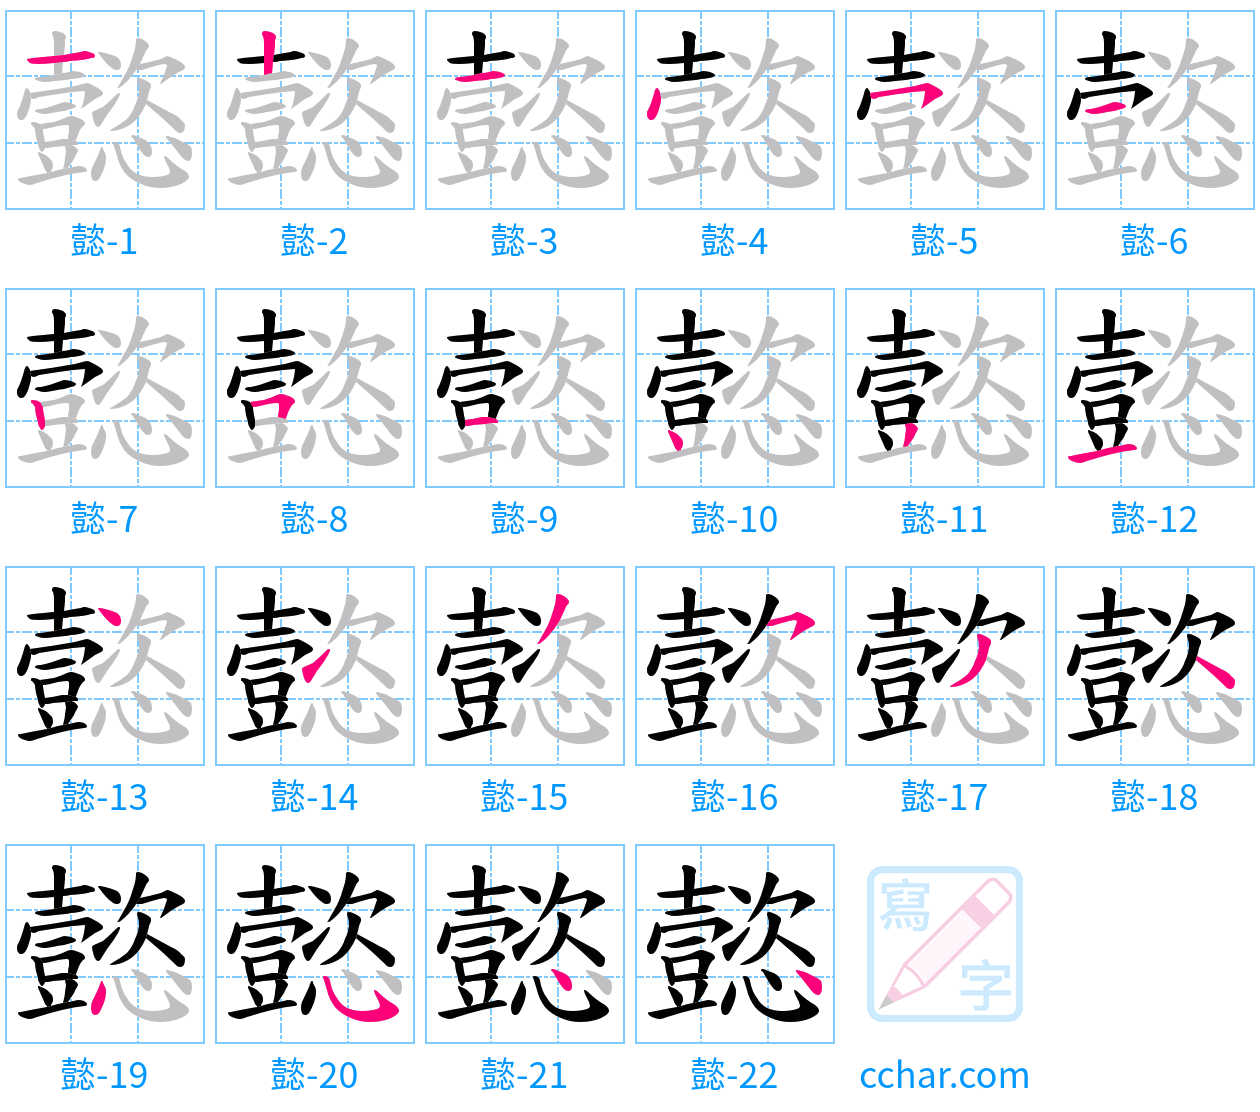 懿 stroke order step-by-step diagram